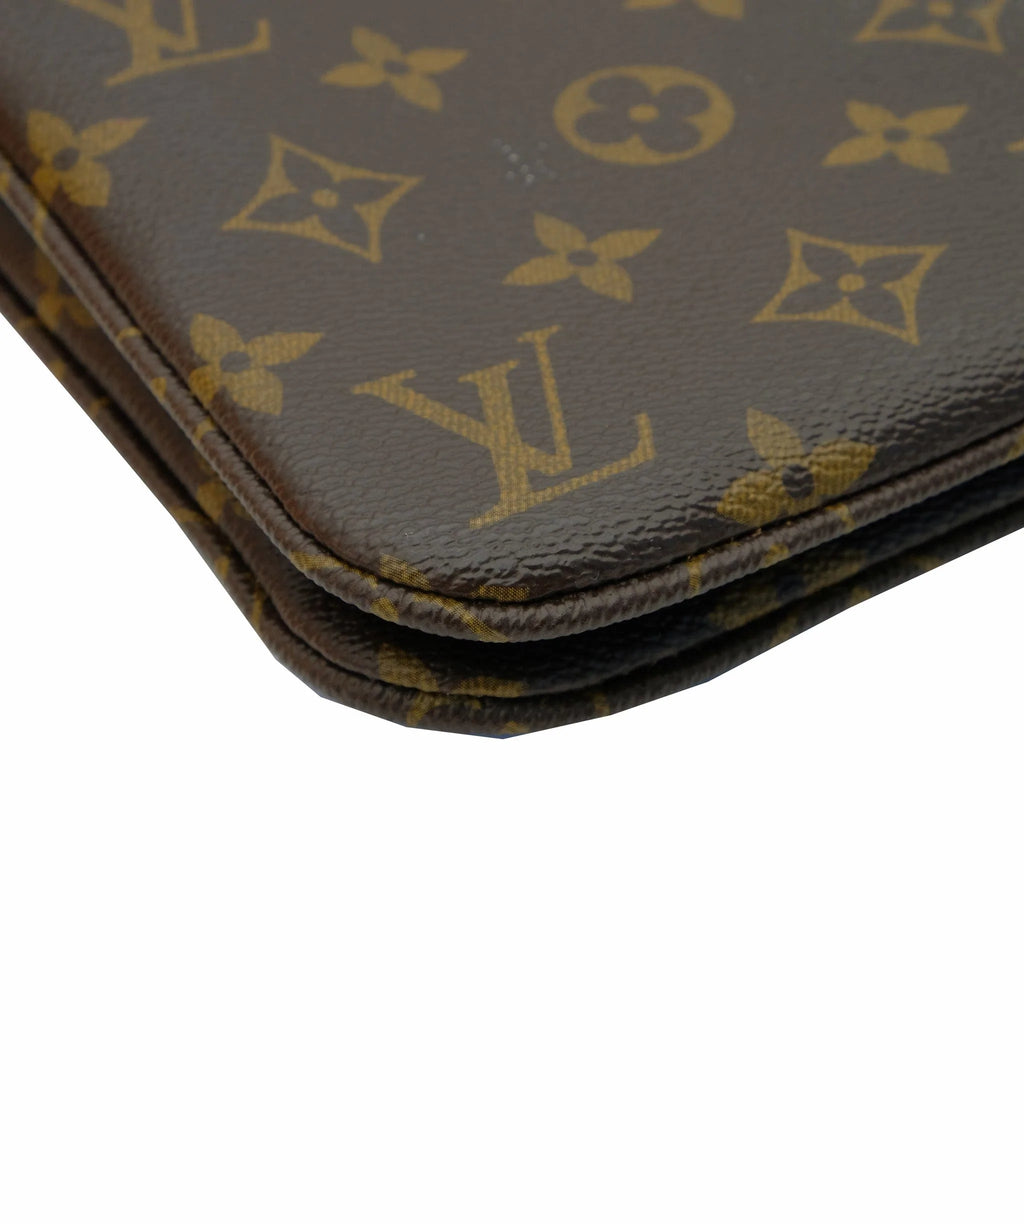 Louis Vuitton Horizon Laptop Portfolio Case - Good or Bag